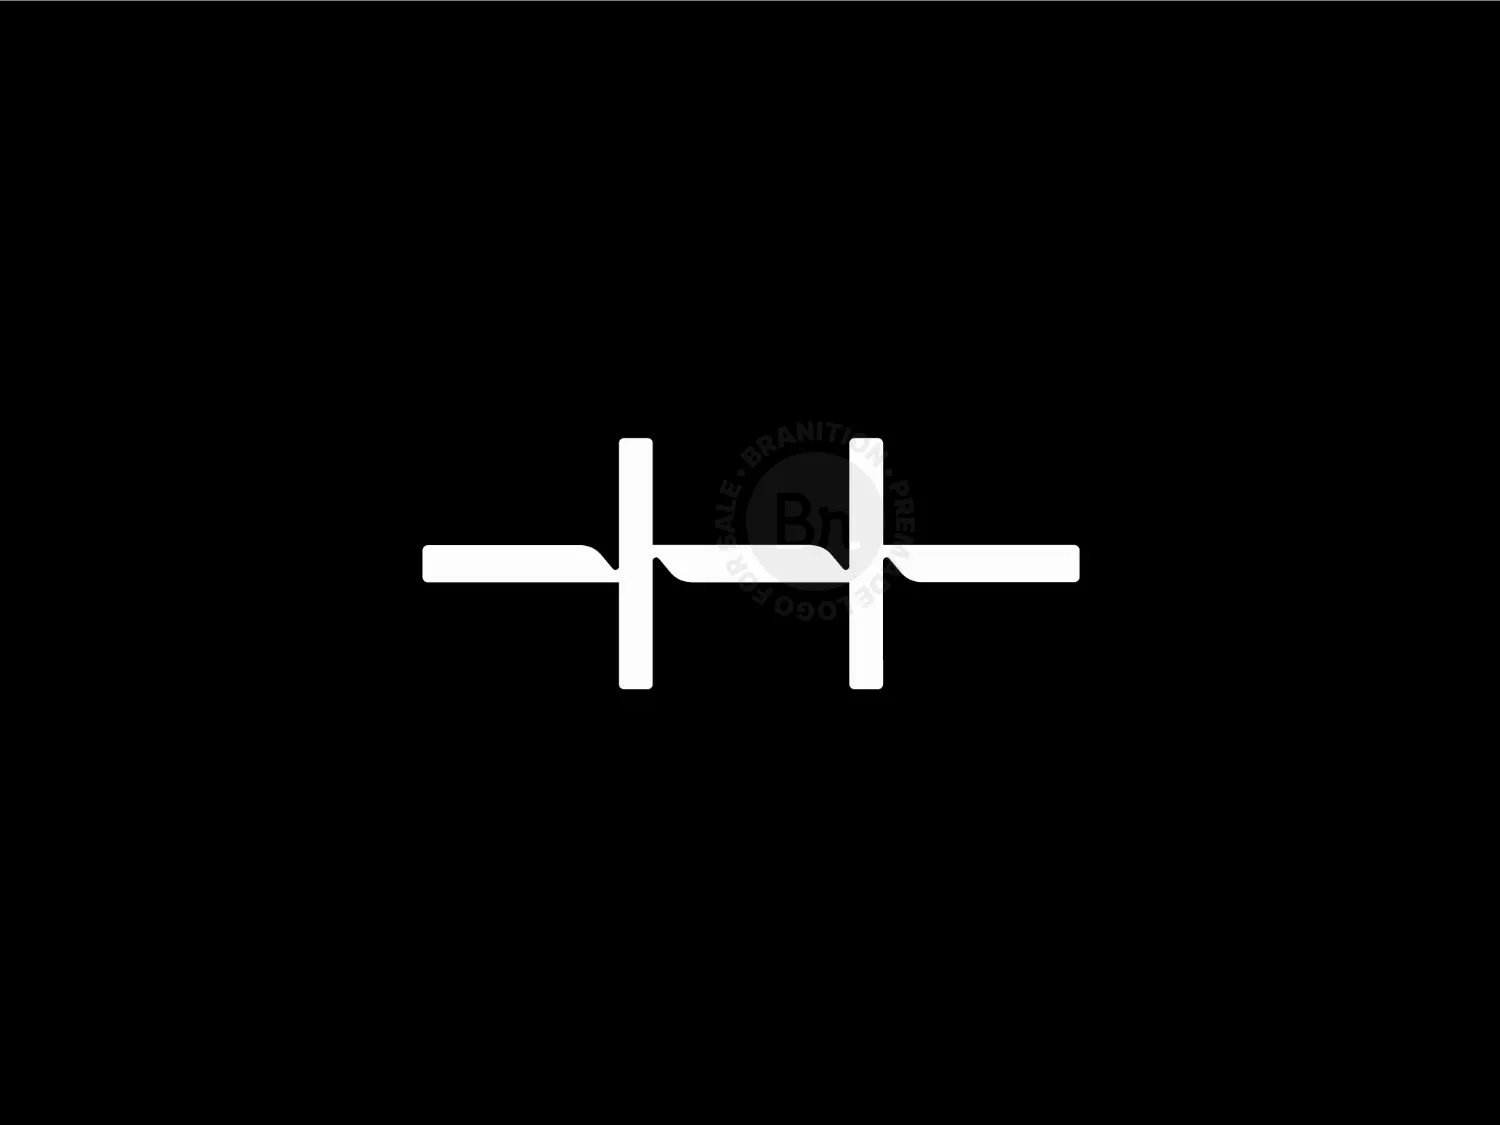 H Lettermark / Symbol / Mark / Chain